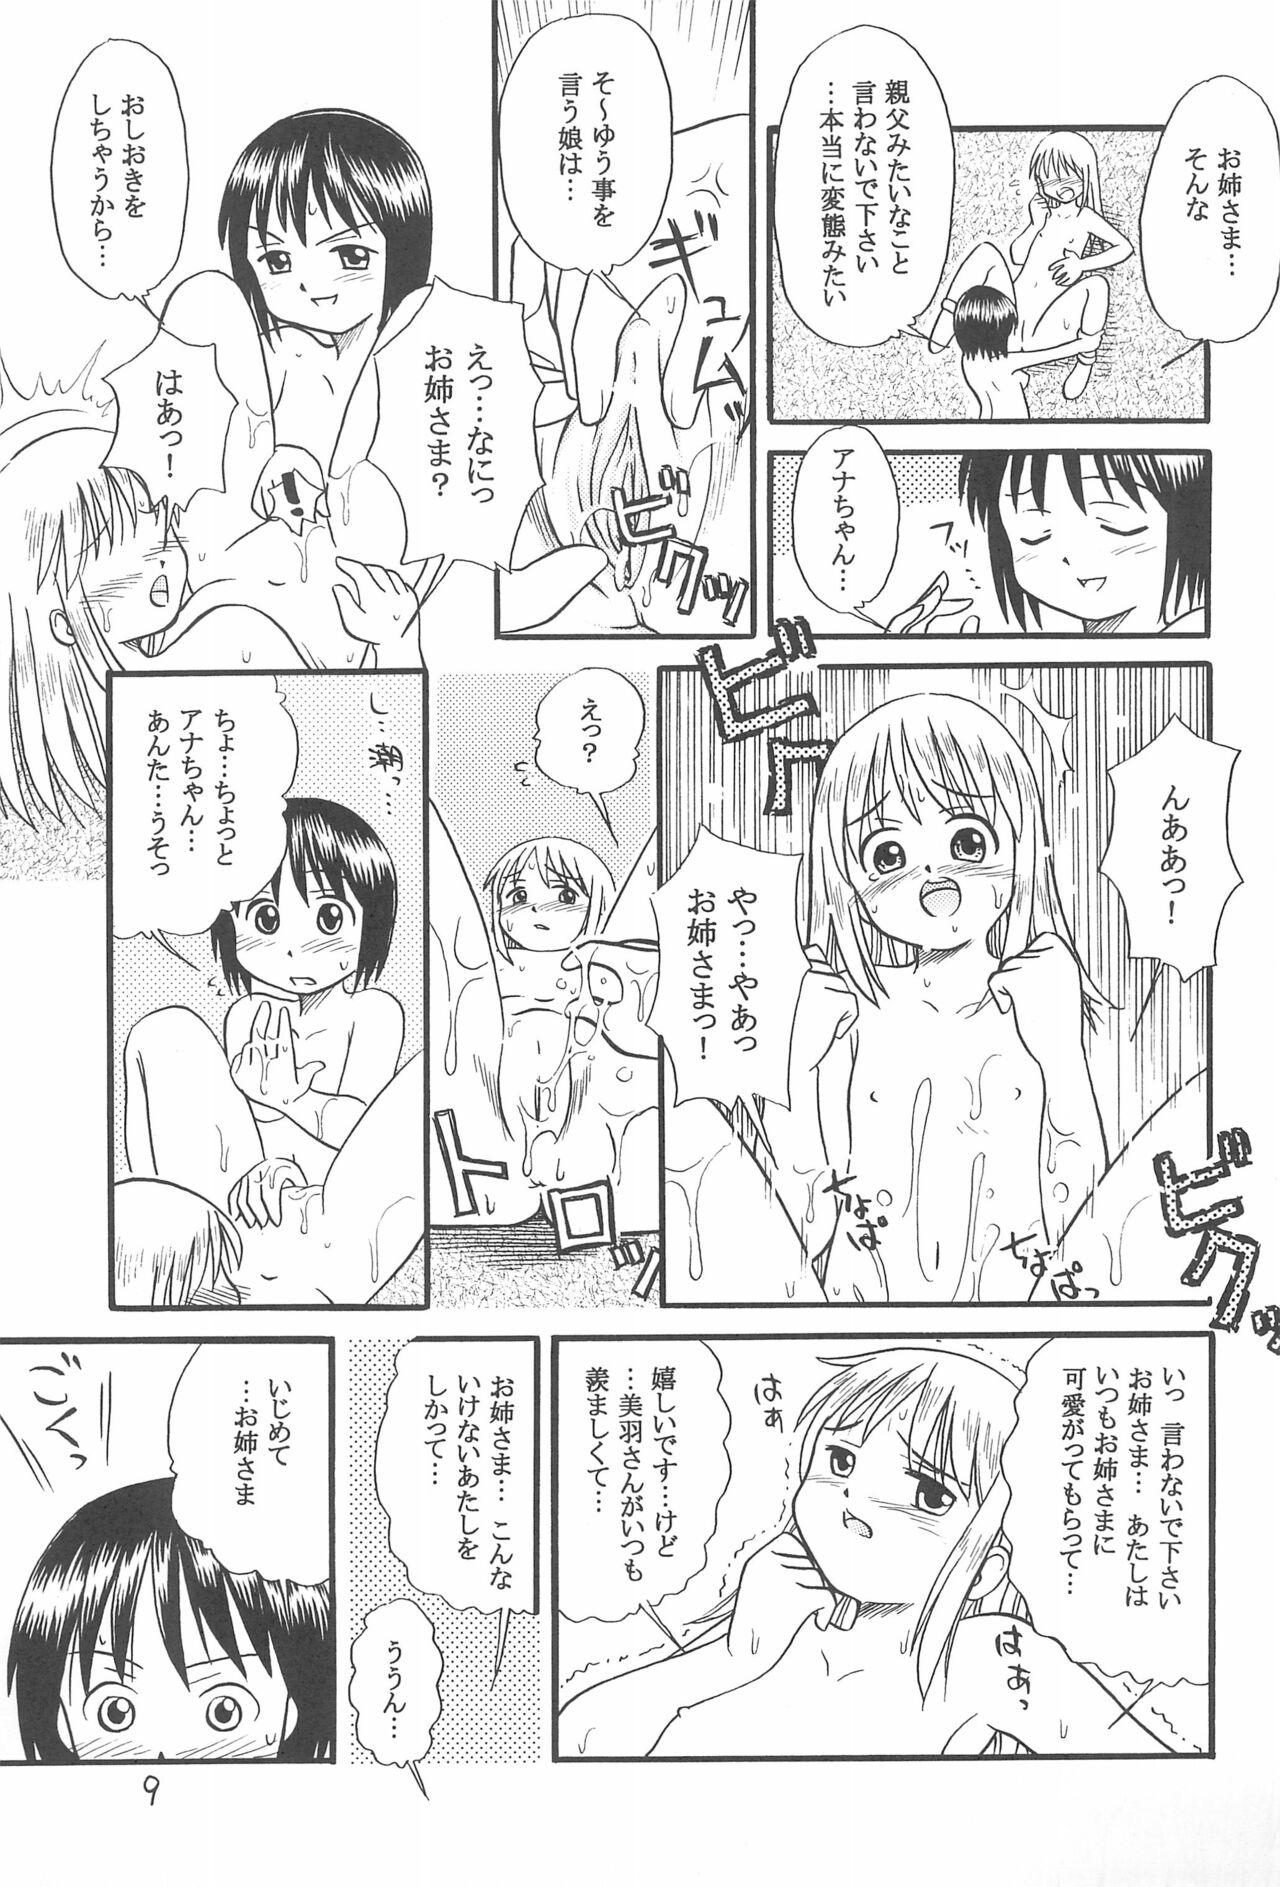 High Ichigo Renniu - Ichigo mashimaro 18yo - Page 11